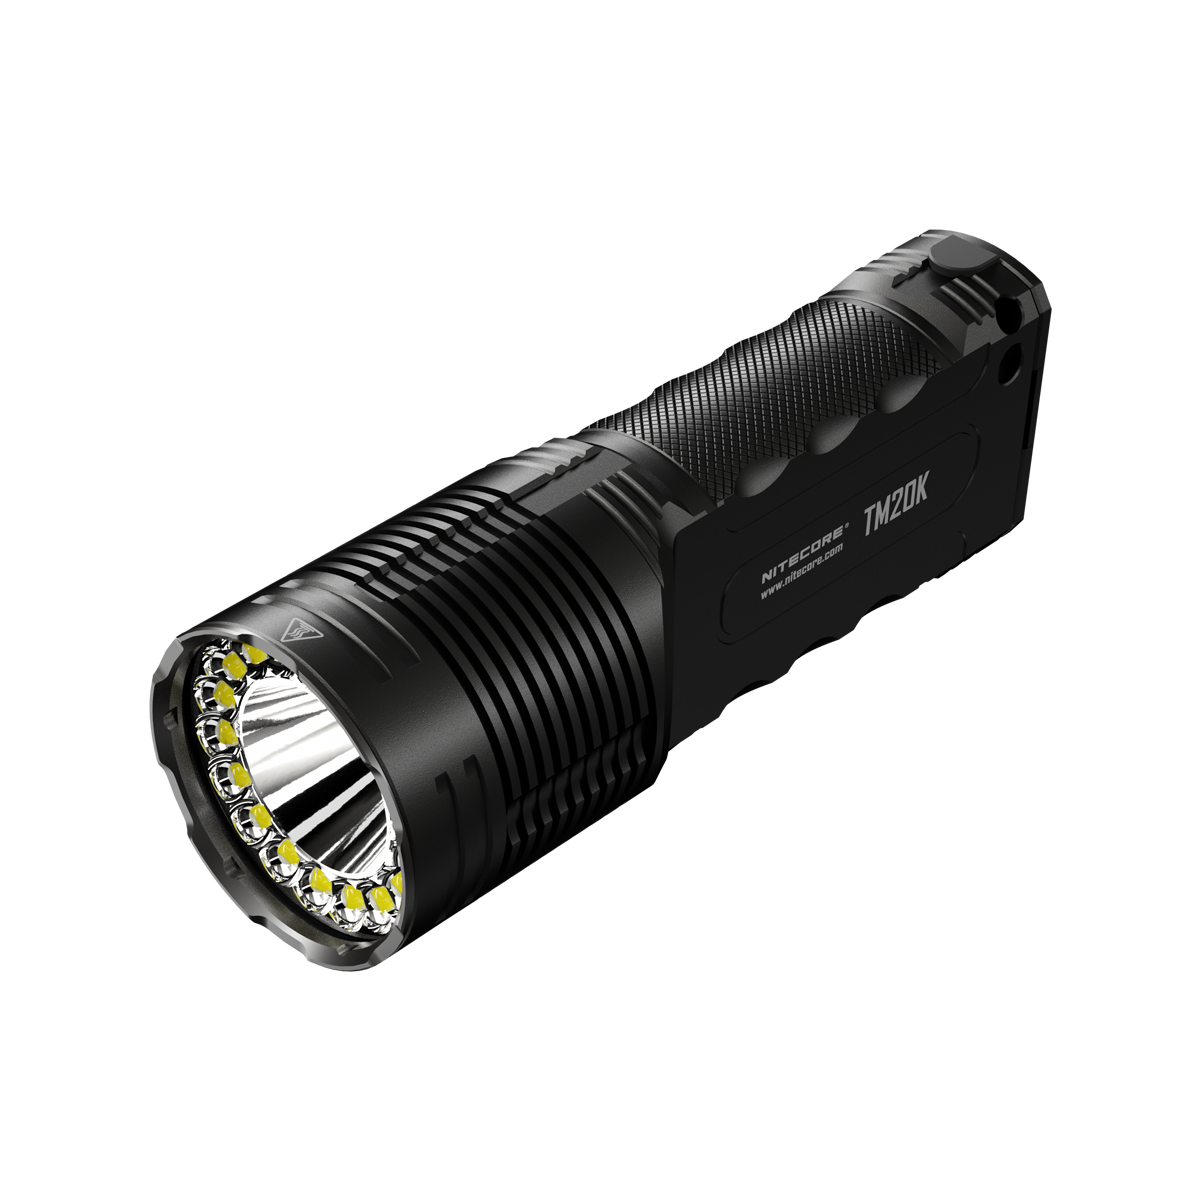 NITECORE TM20K 20.000 Lumen Sterke USB Oplaadbare Zaklamp 19Pcs LED Krachtige LED Zaklamp